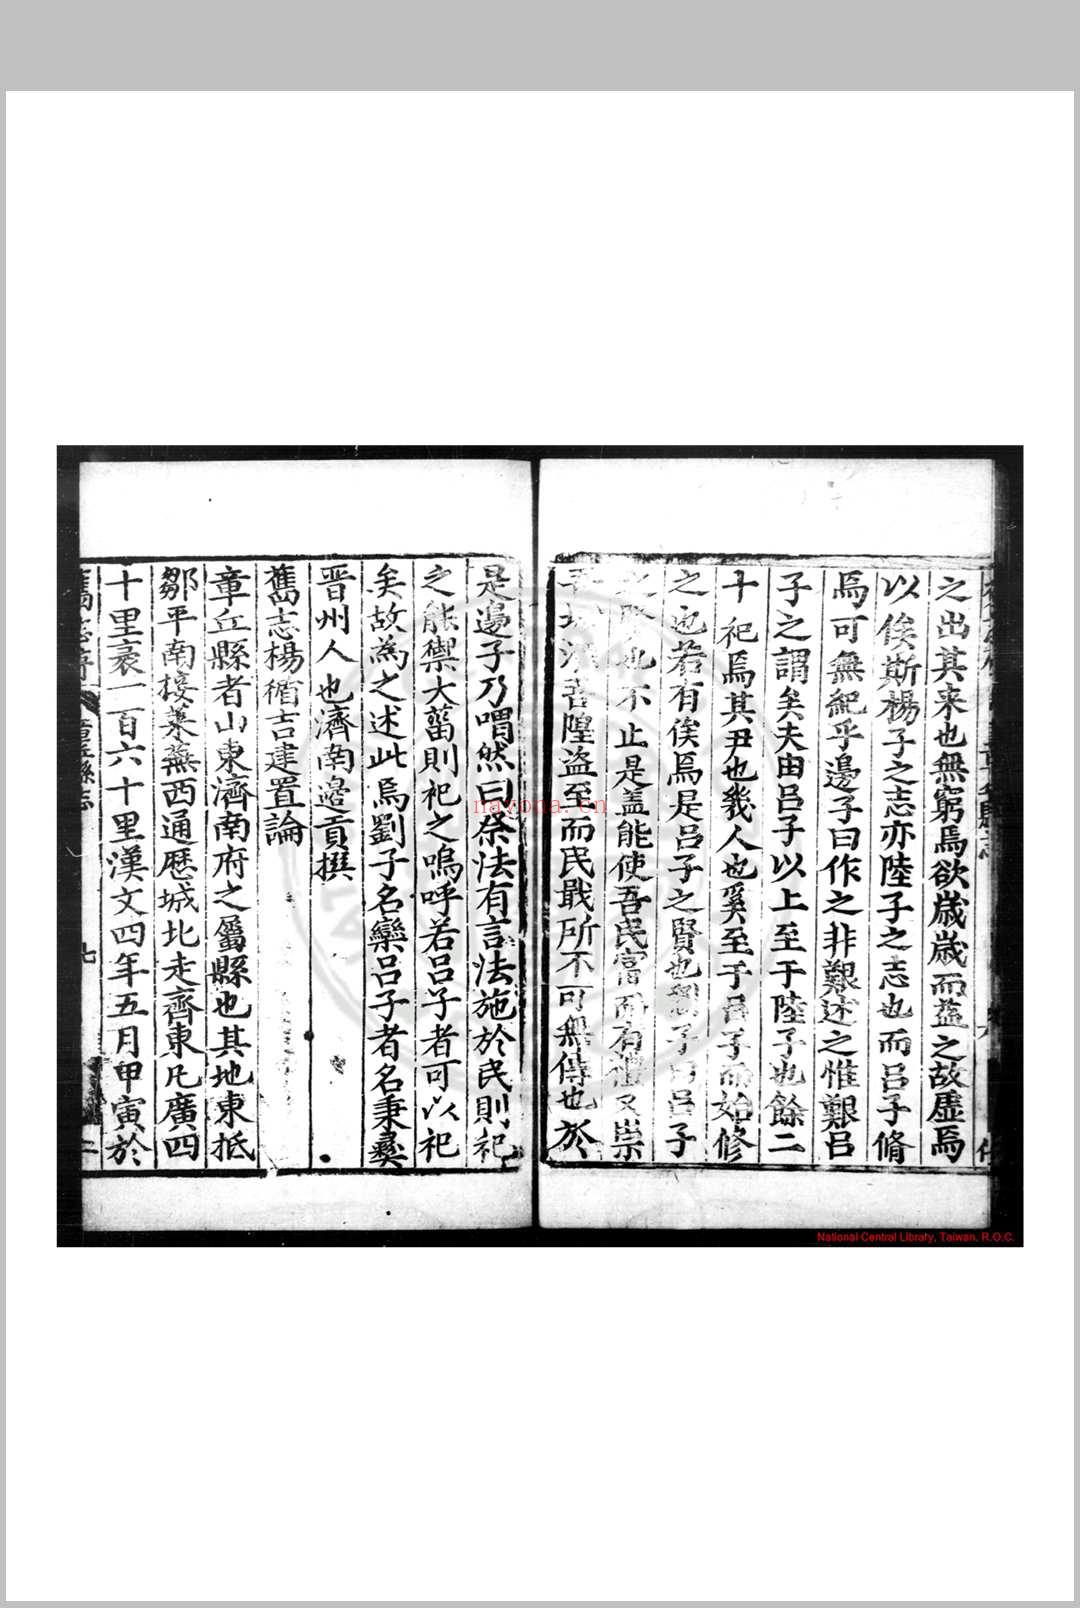 章邱县志 (明)董复亨等纂修 明万历丙申(二十四年, 1596)刊黑口本